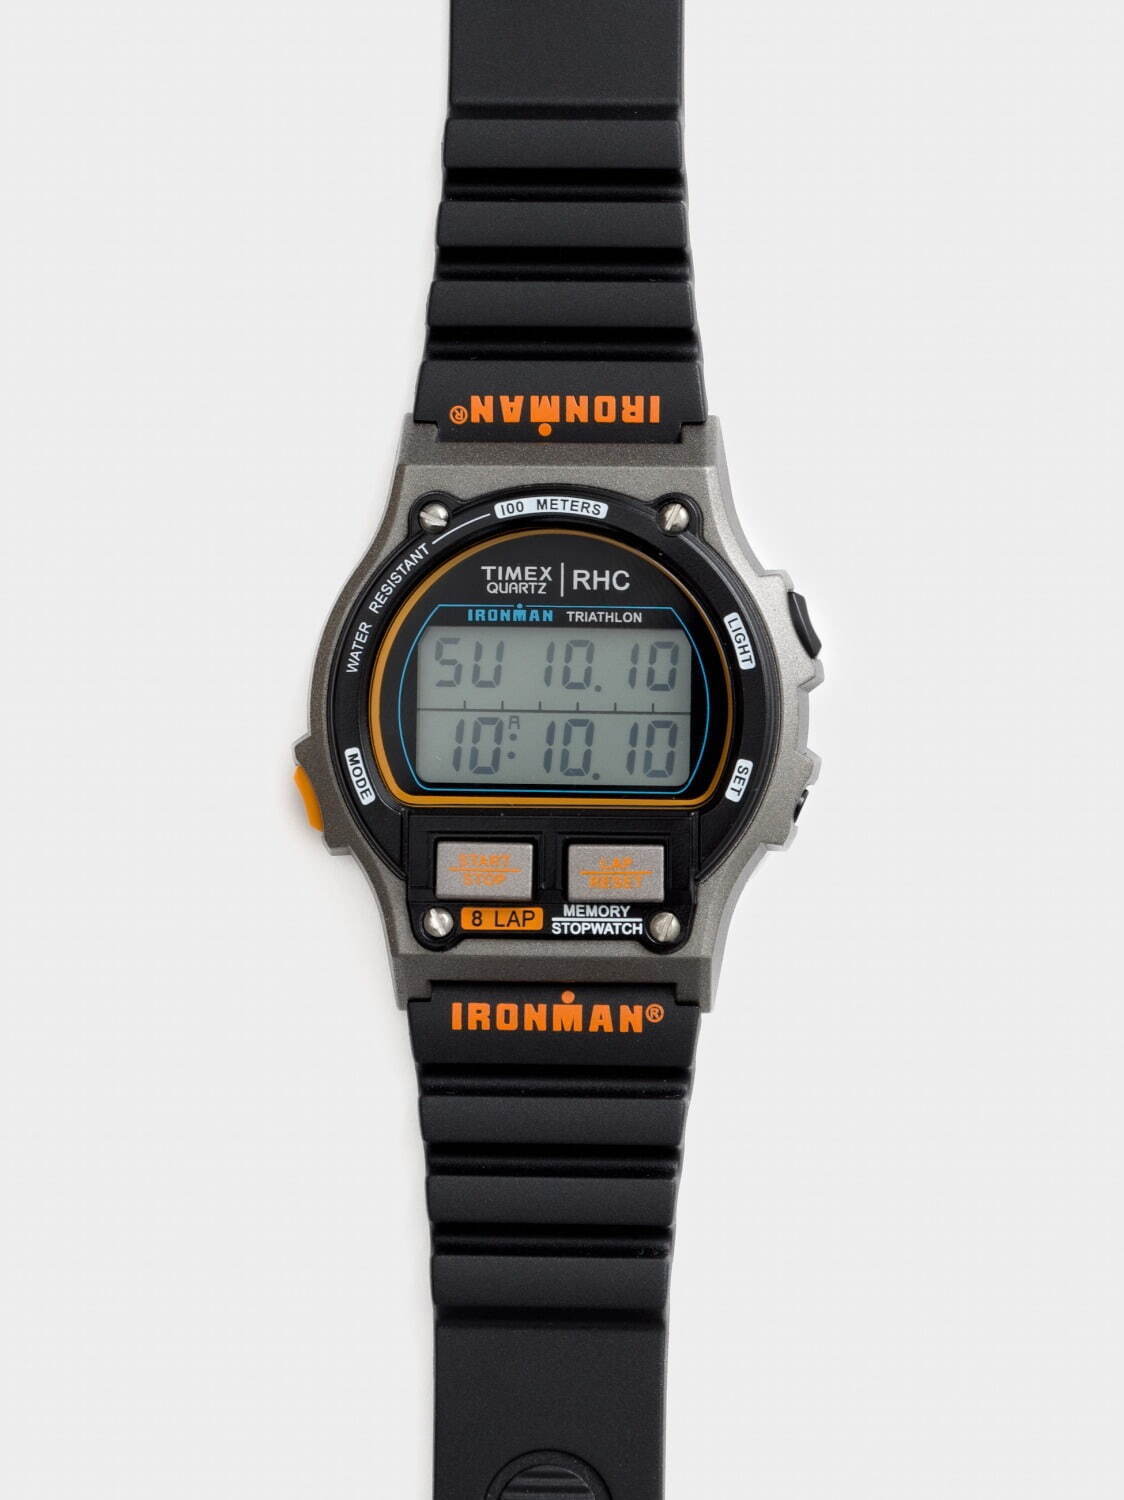 タイメックス for RHC 腕時計 17,600円